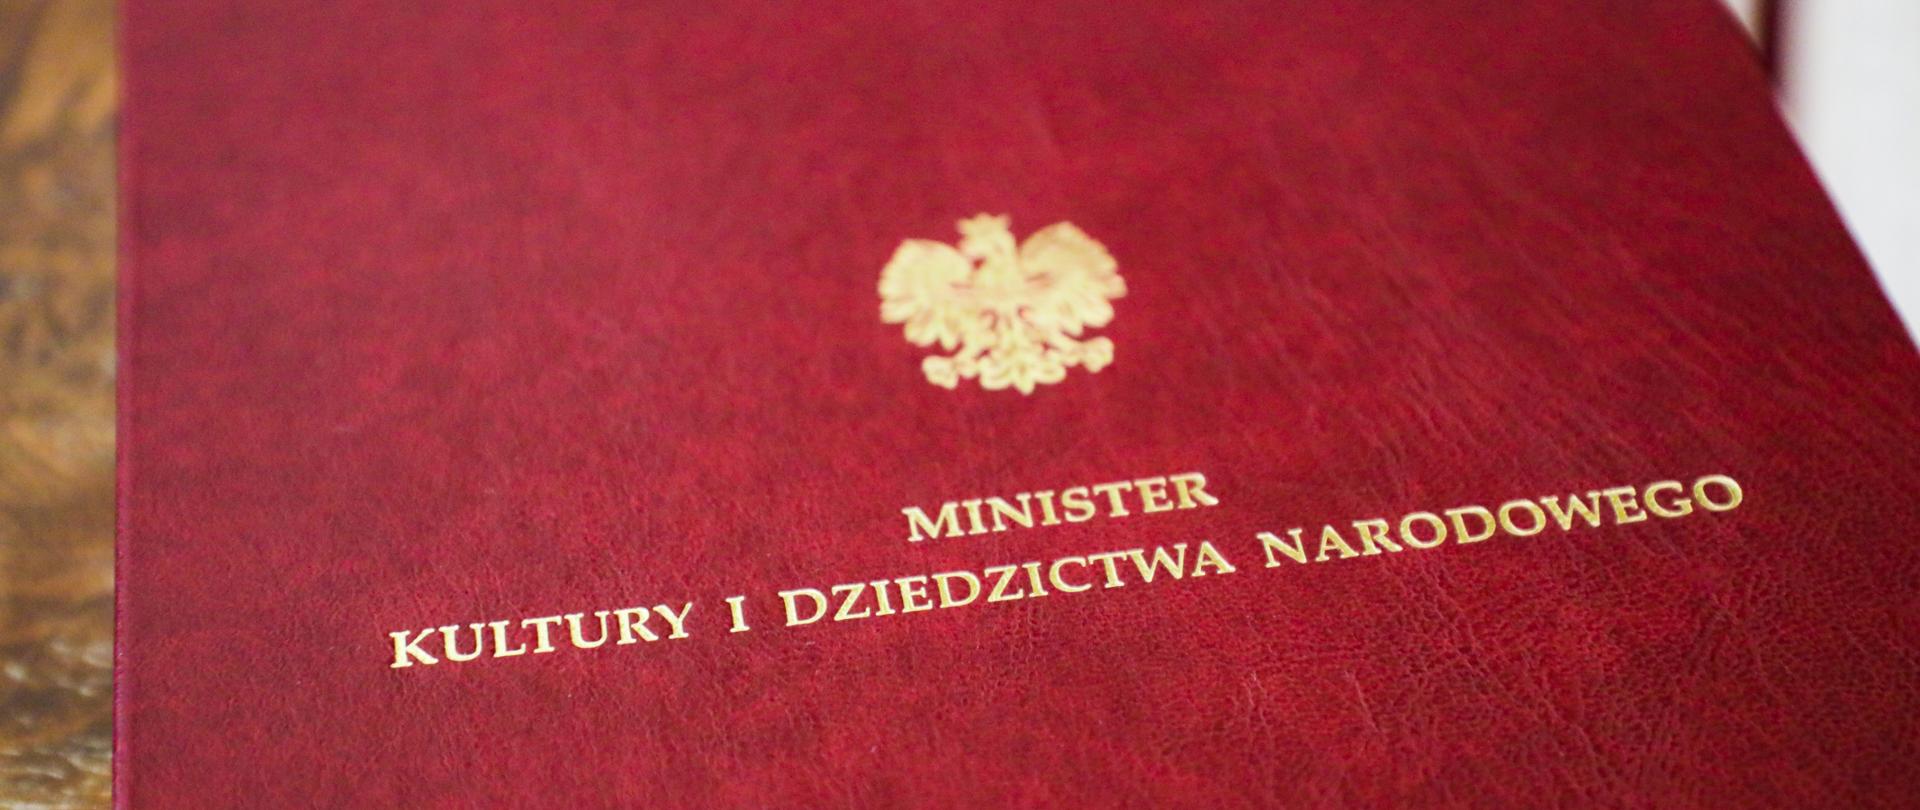 Bordowa teczka z napisem Minister Kultury i Dziedzictwa Narodowego, Fot. Danuta Matloch